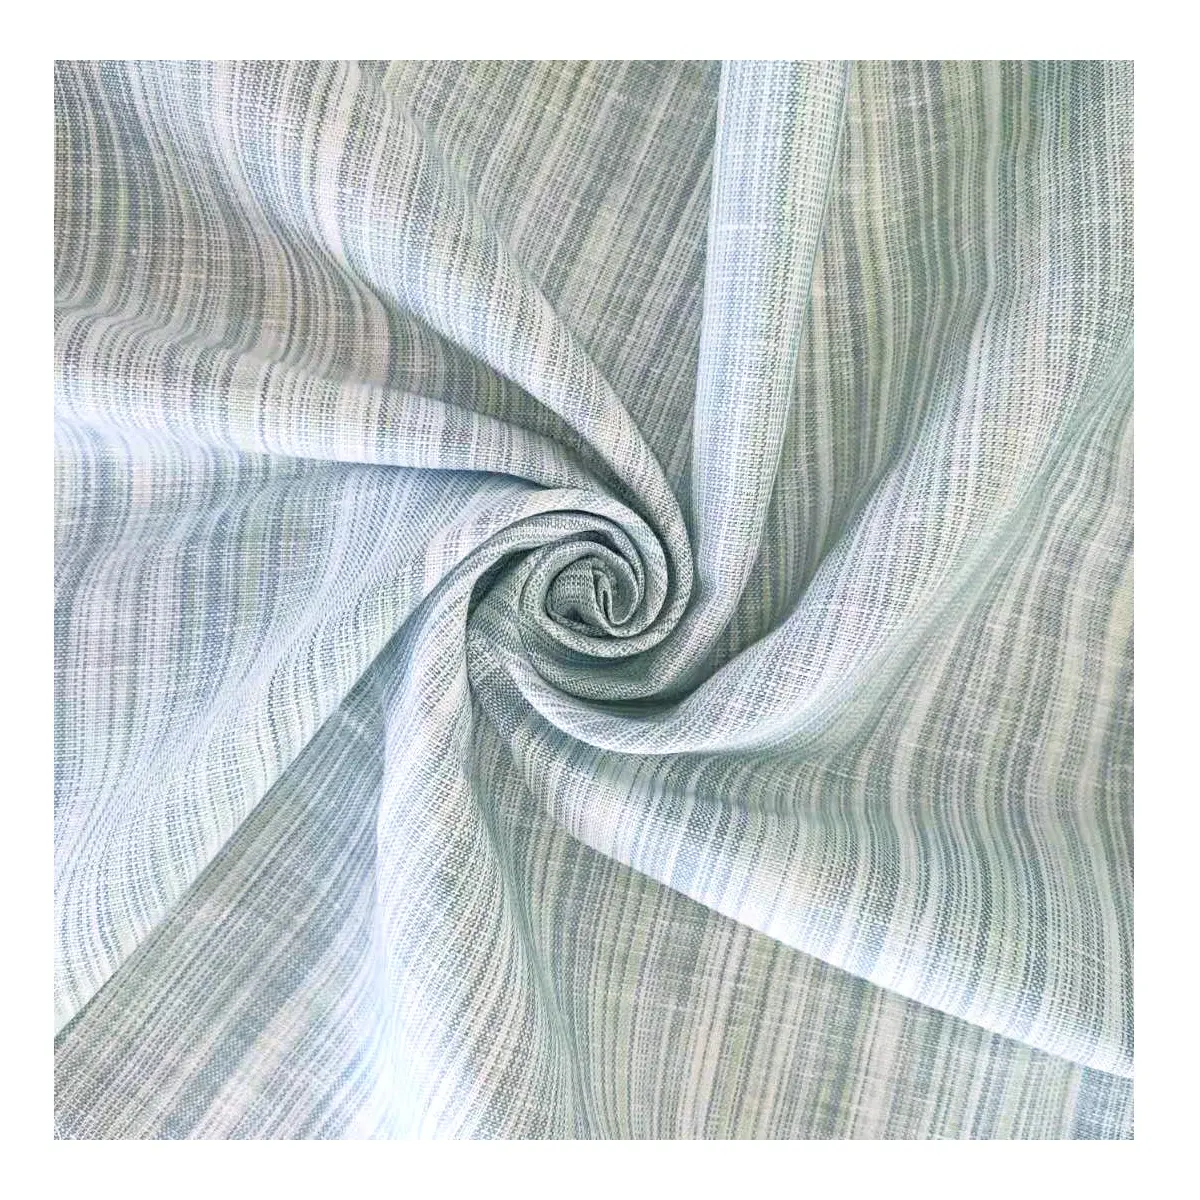 Новый дизайн, 60% лен, 40% хлопчатобумажная пряжа, окрашенная полосатая ткань для рубашек и платьев, рулонная льняная хлопчатобумажная ткань